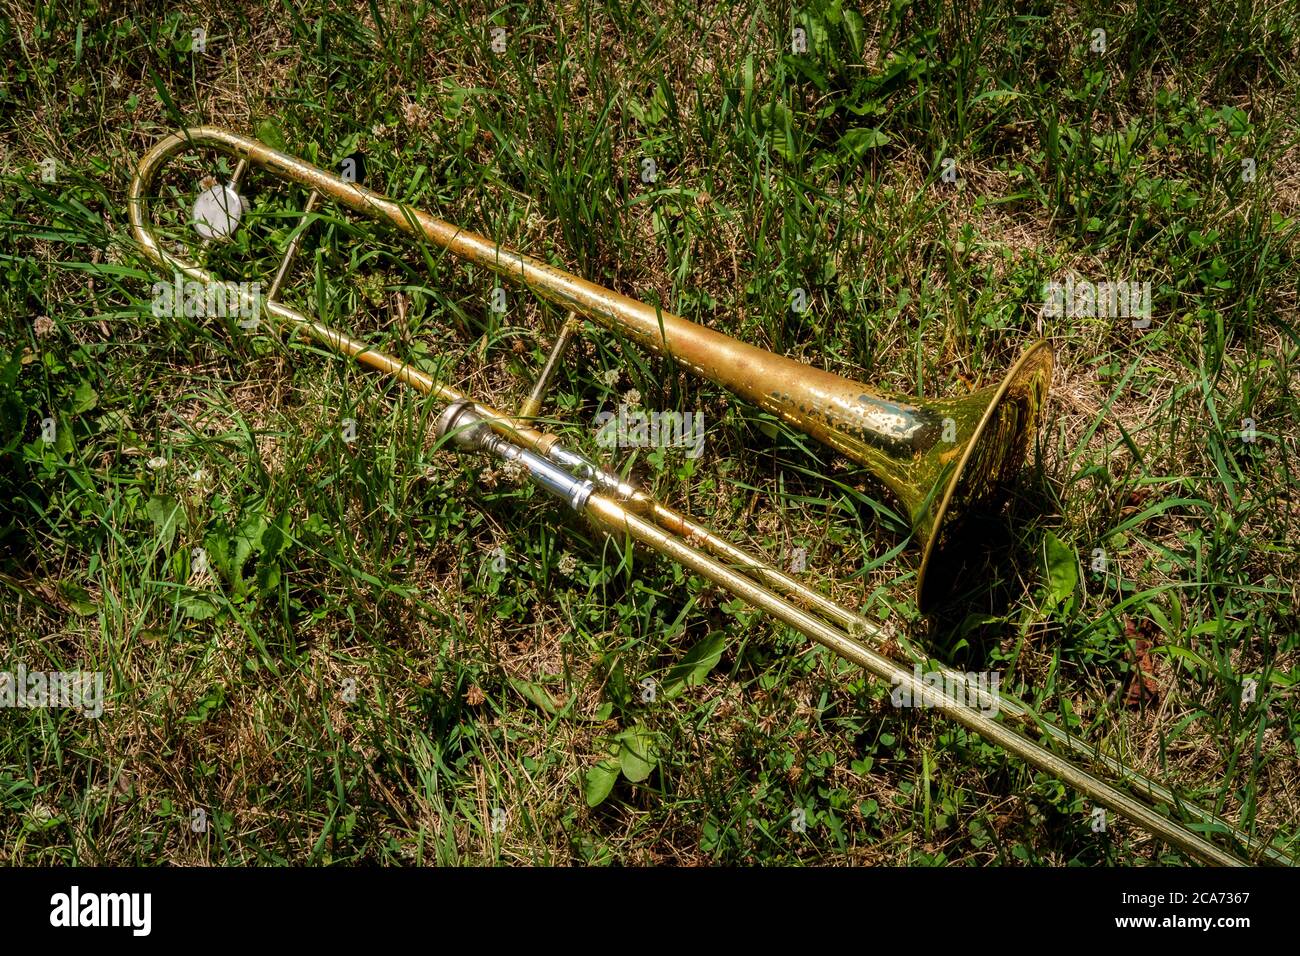 What is a rusty trombone